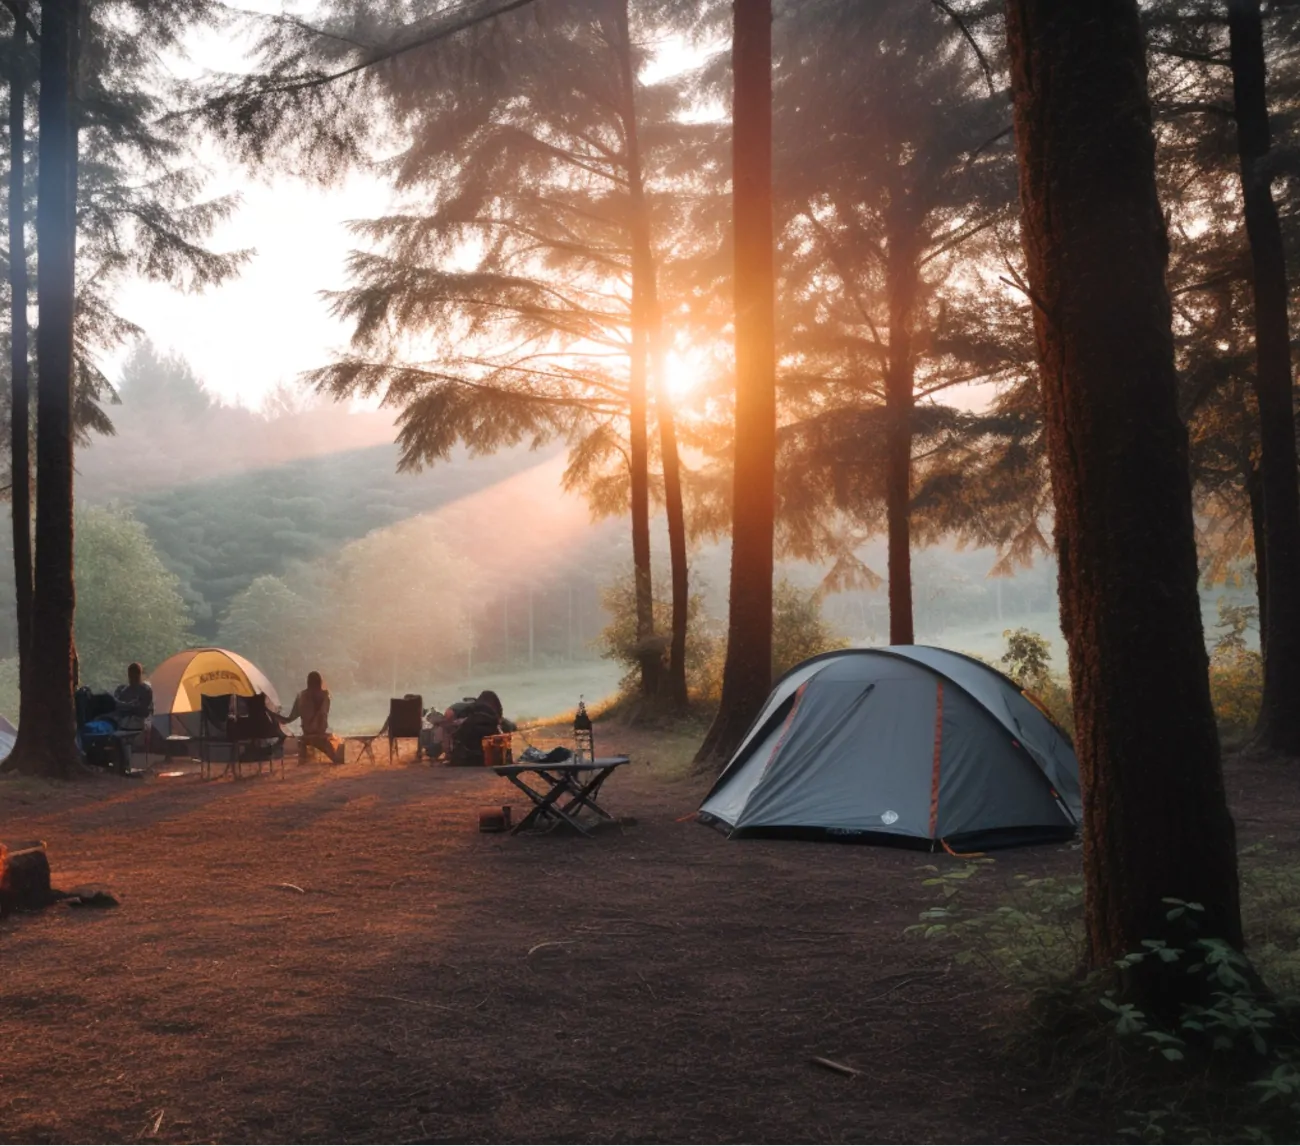 キャンプ場に降り注ぐ朝日はとても気持ちが良いものです